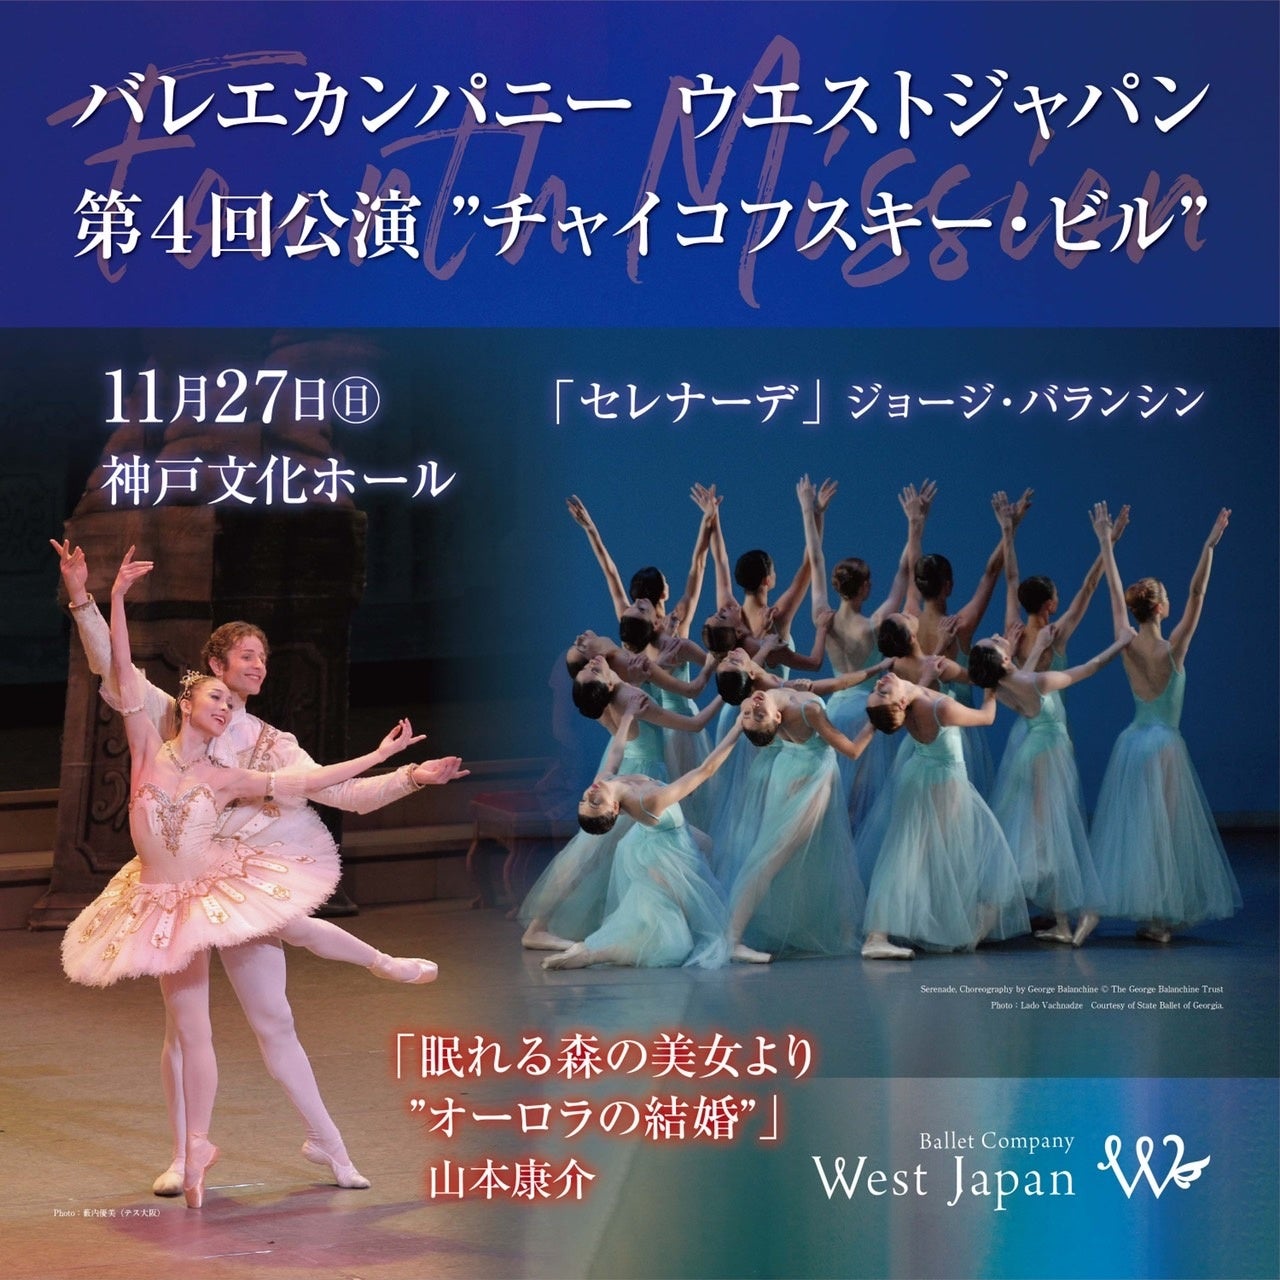 バレエ「眠れる森の美女」「セレナーデ」を上演　『Ballet Company West Japan 第四回公演 Fourth Mission チャイコフスキー・ビル』神戸文化ホールにて上演決定